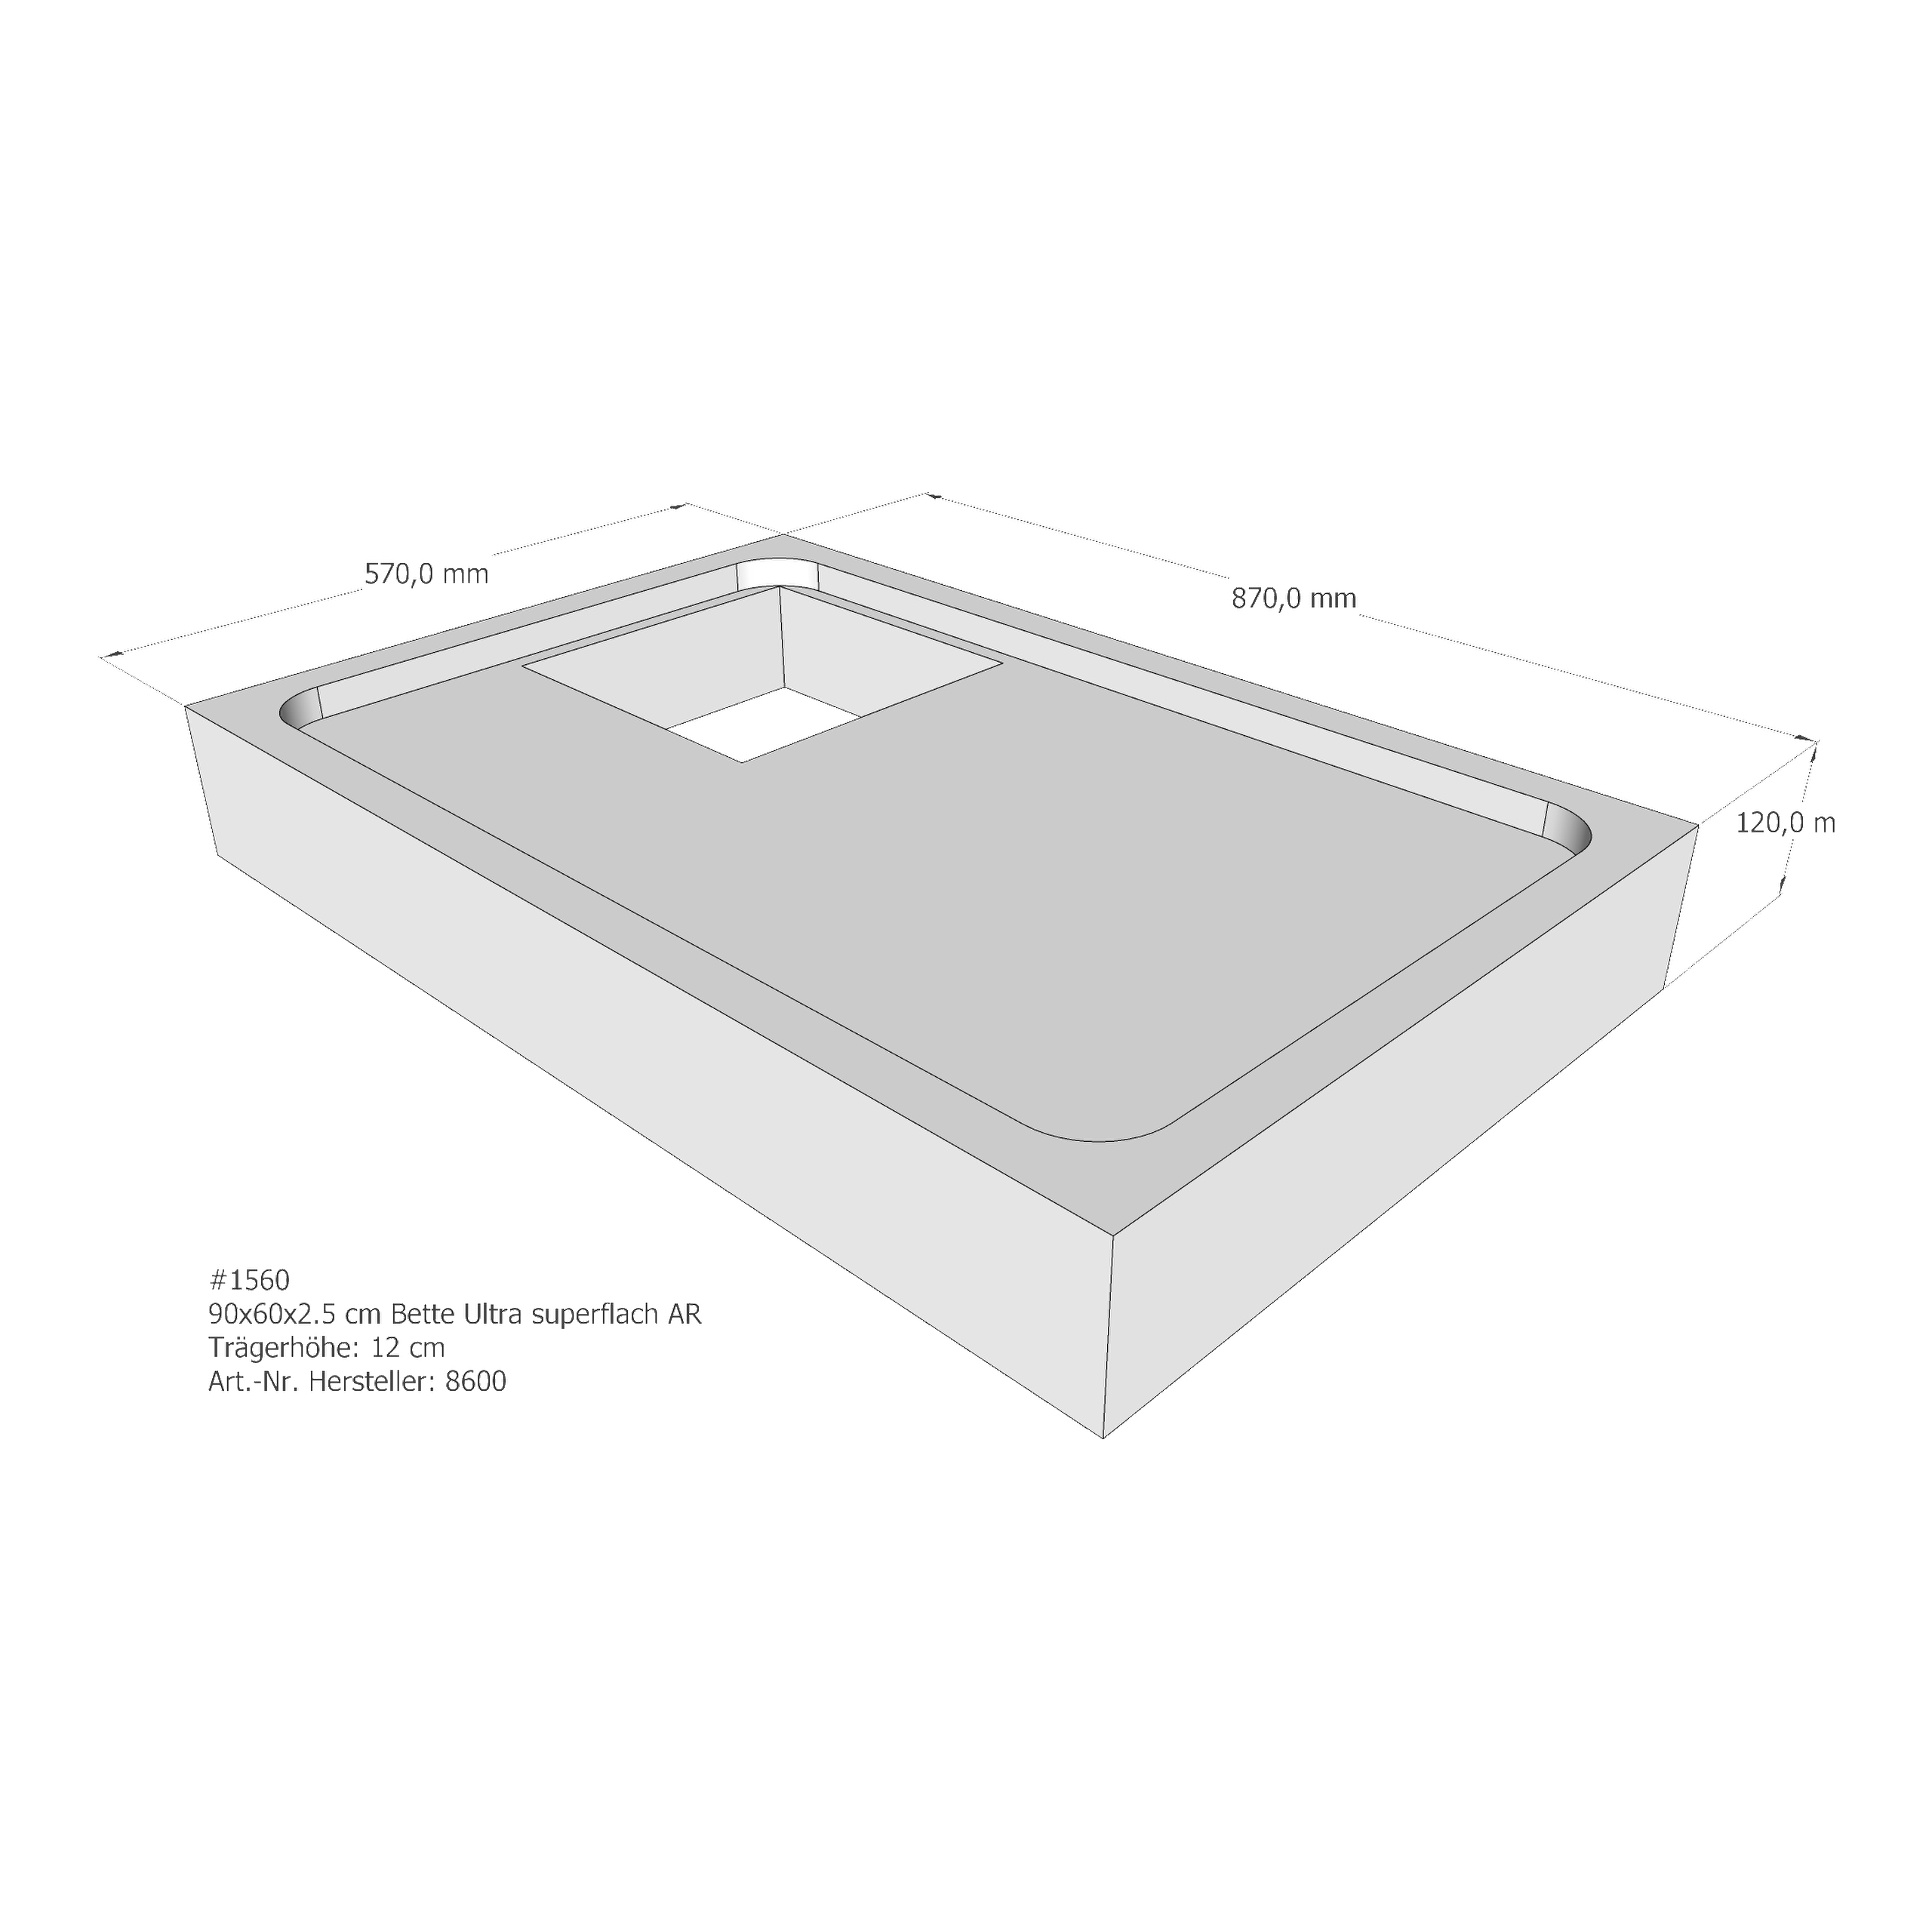 Duschwannenträger Bette BetteUltra (superflach) 90x60x2,5 cm AR210